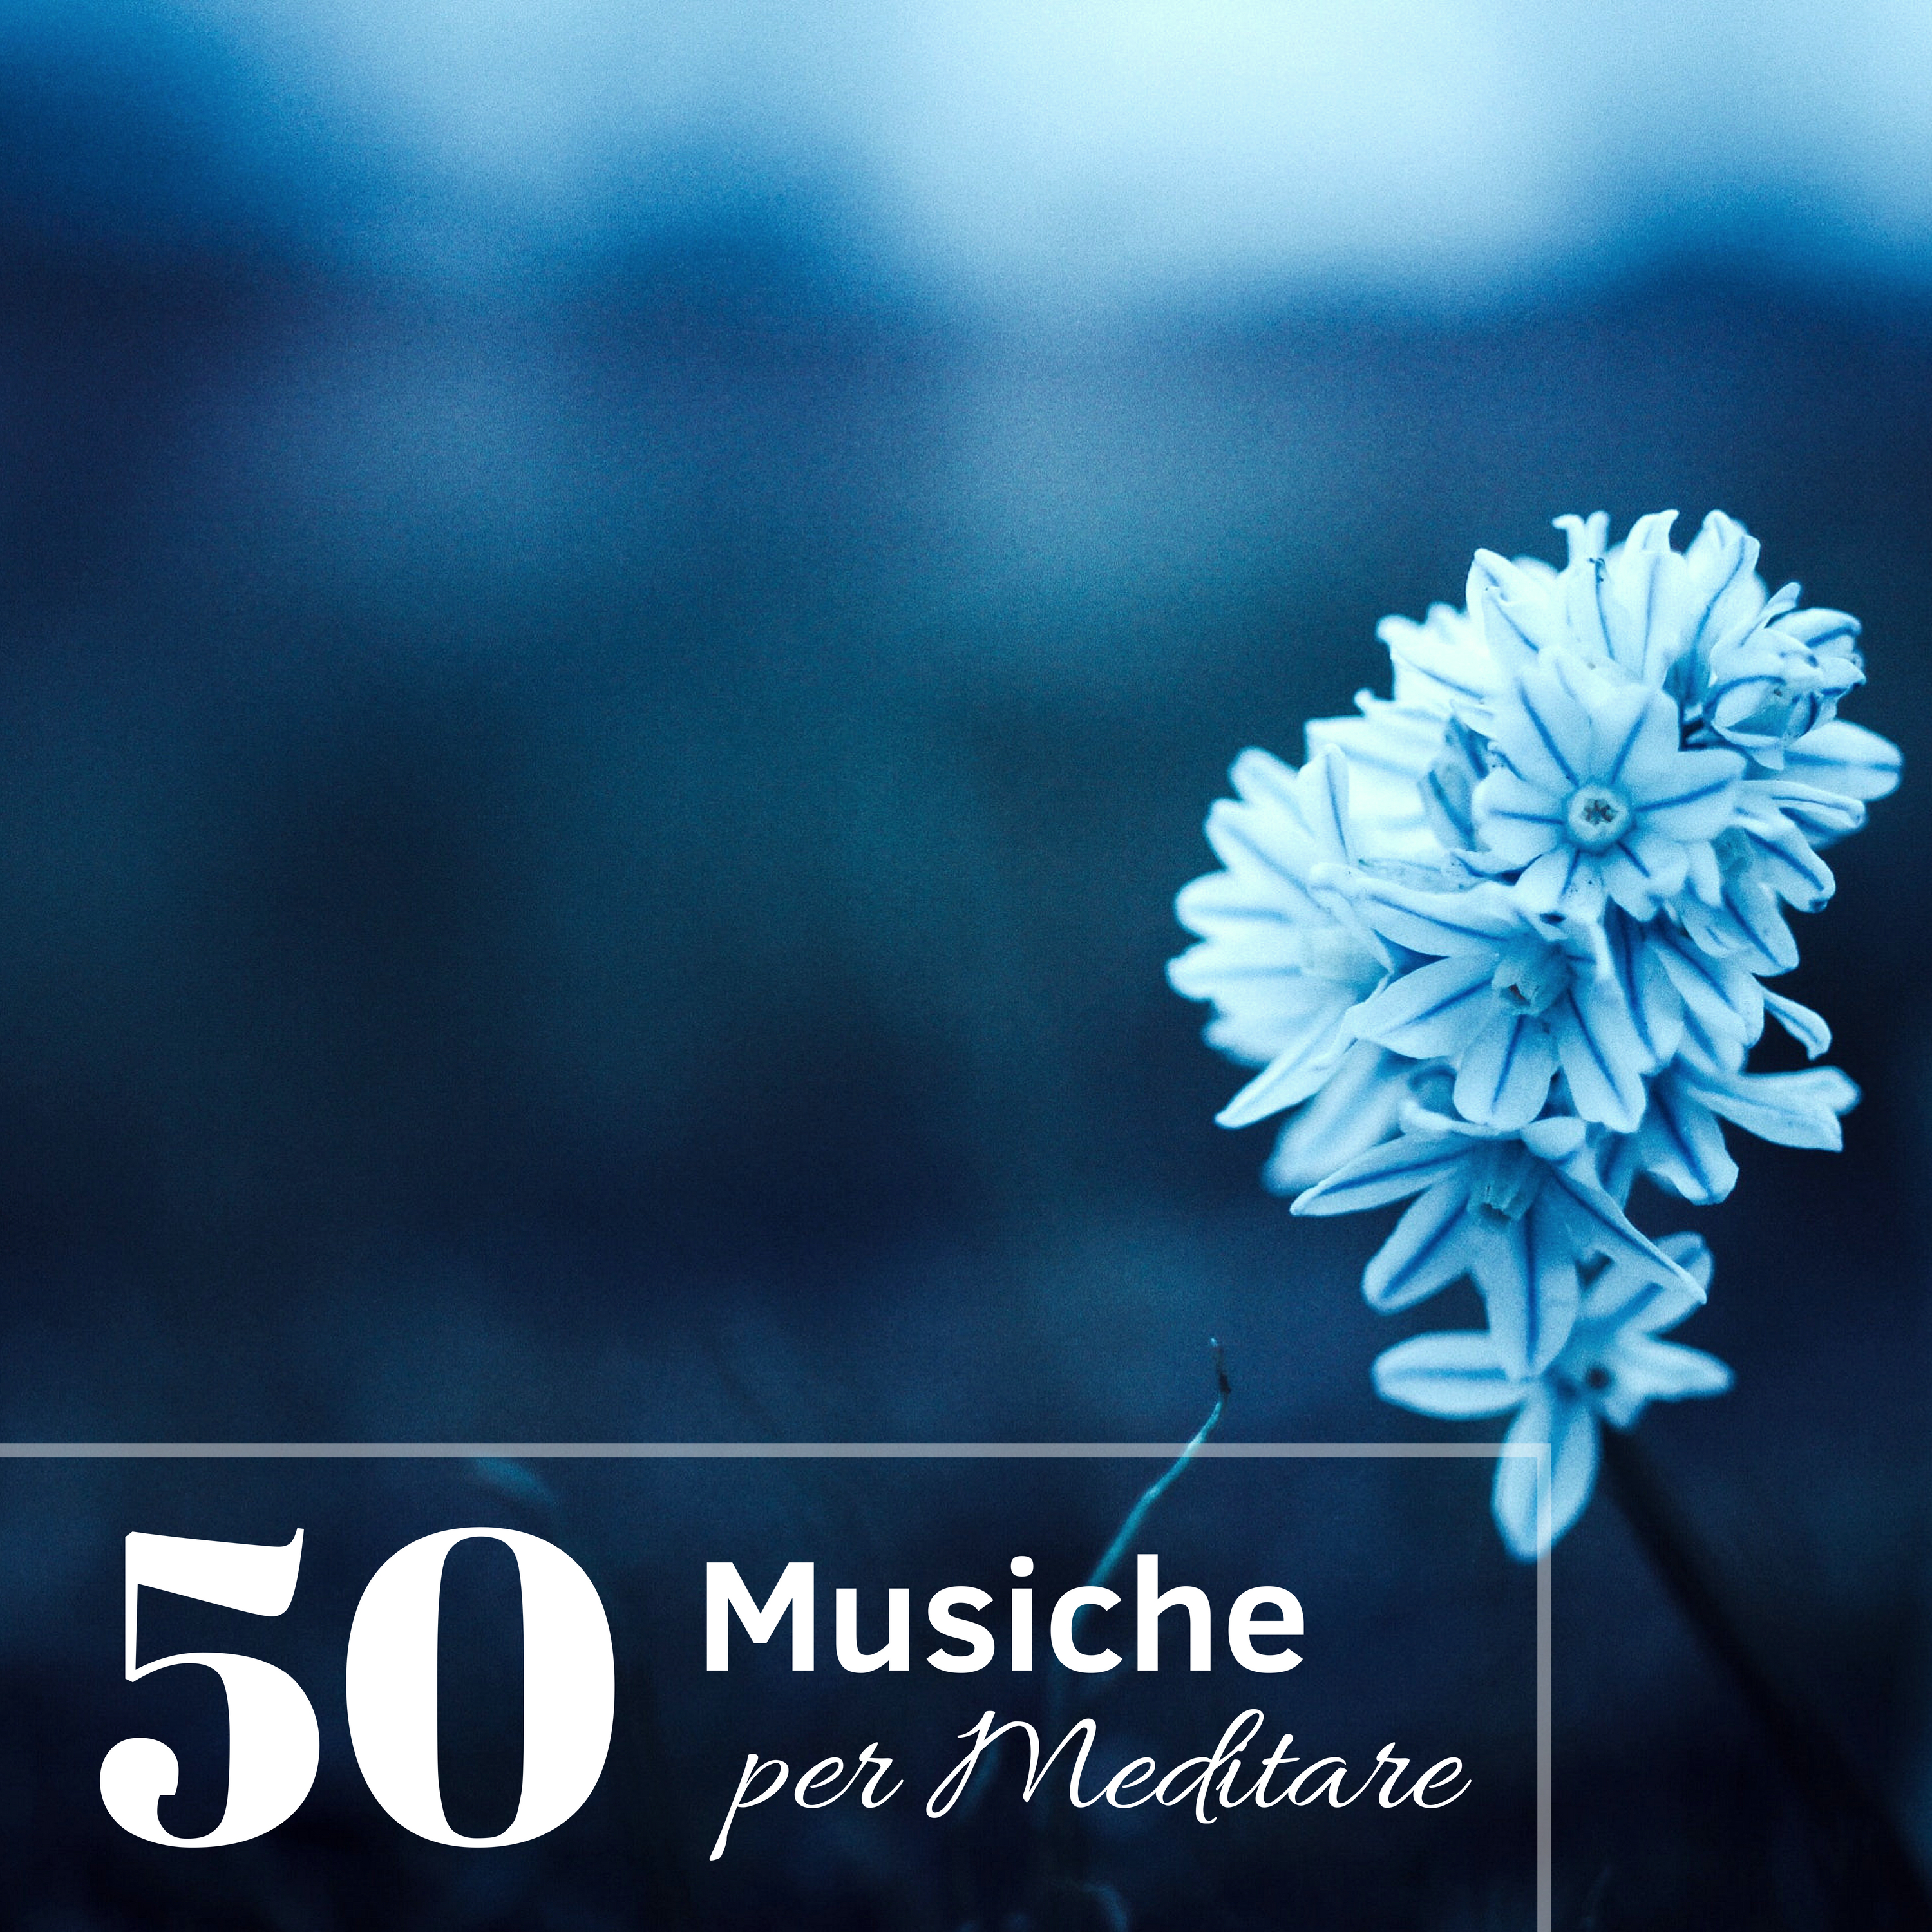 50 Musiche per Meditare - Musica Per Ricollegarsi Al Proprio Sé Superiore